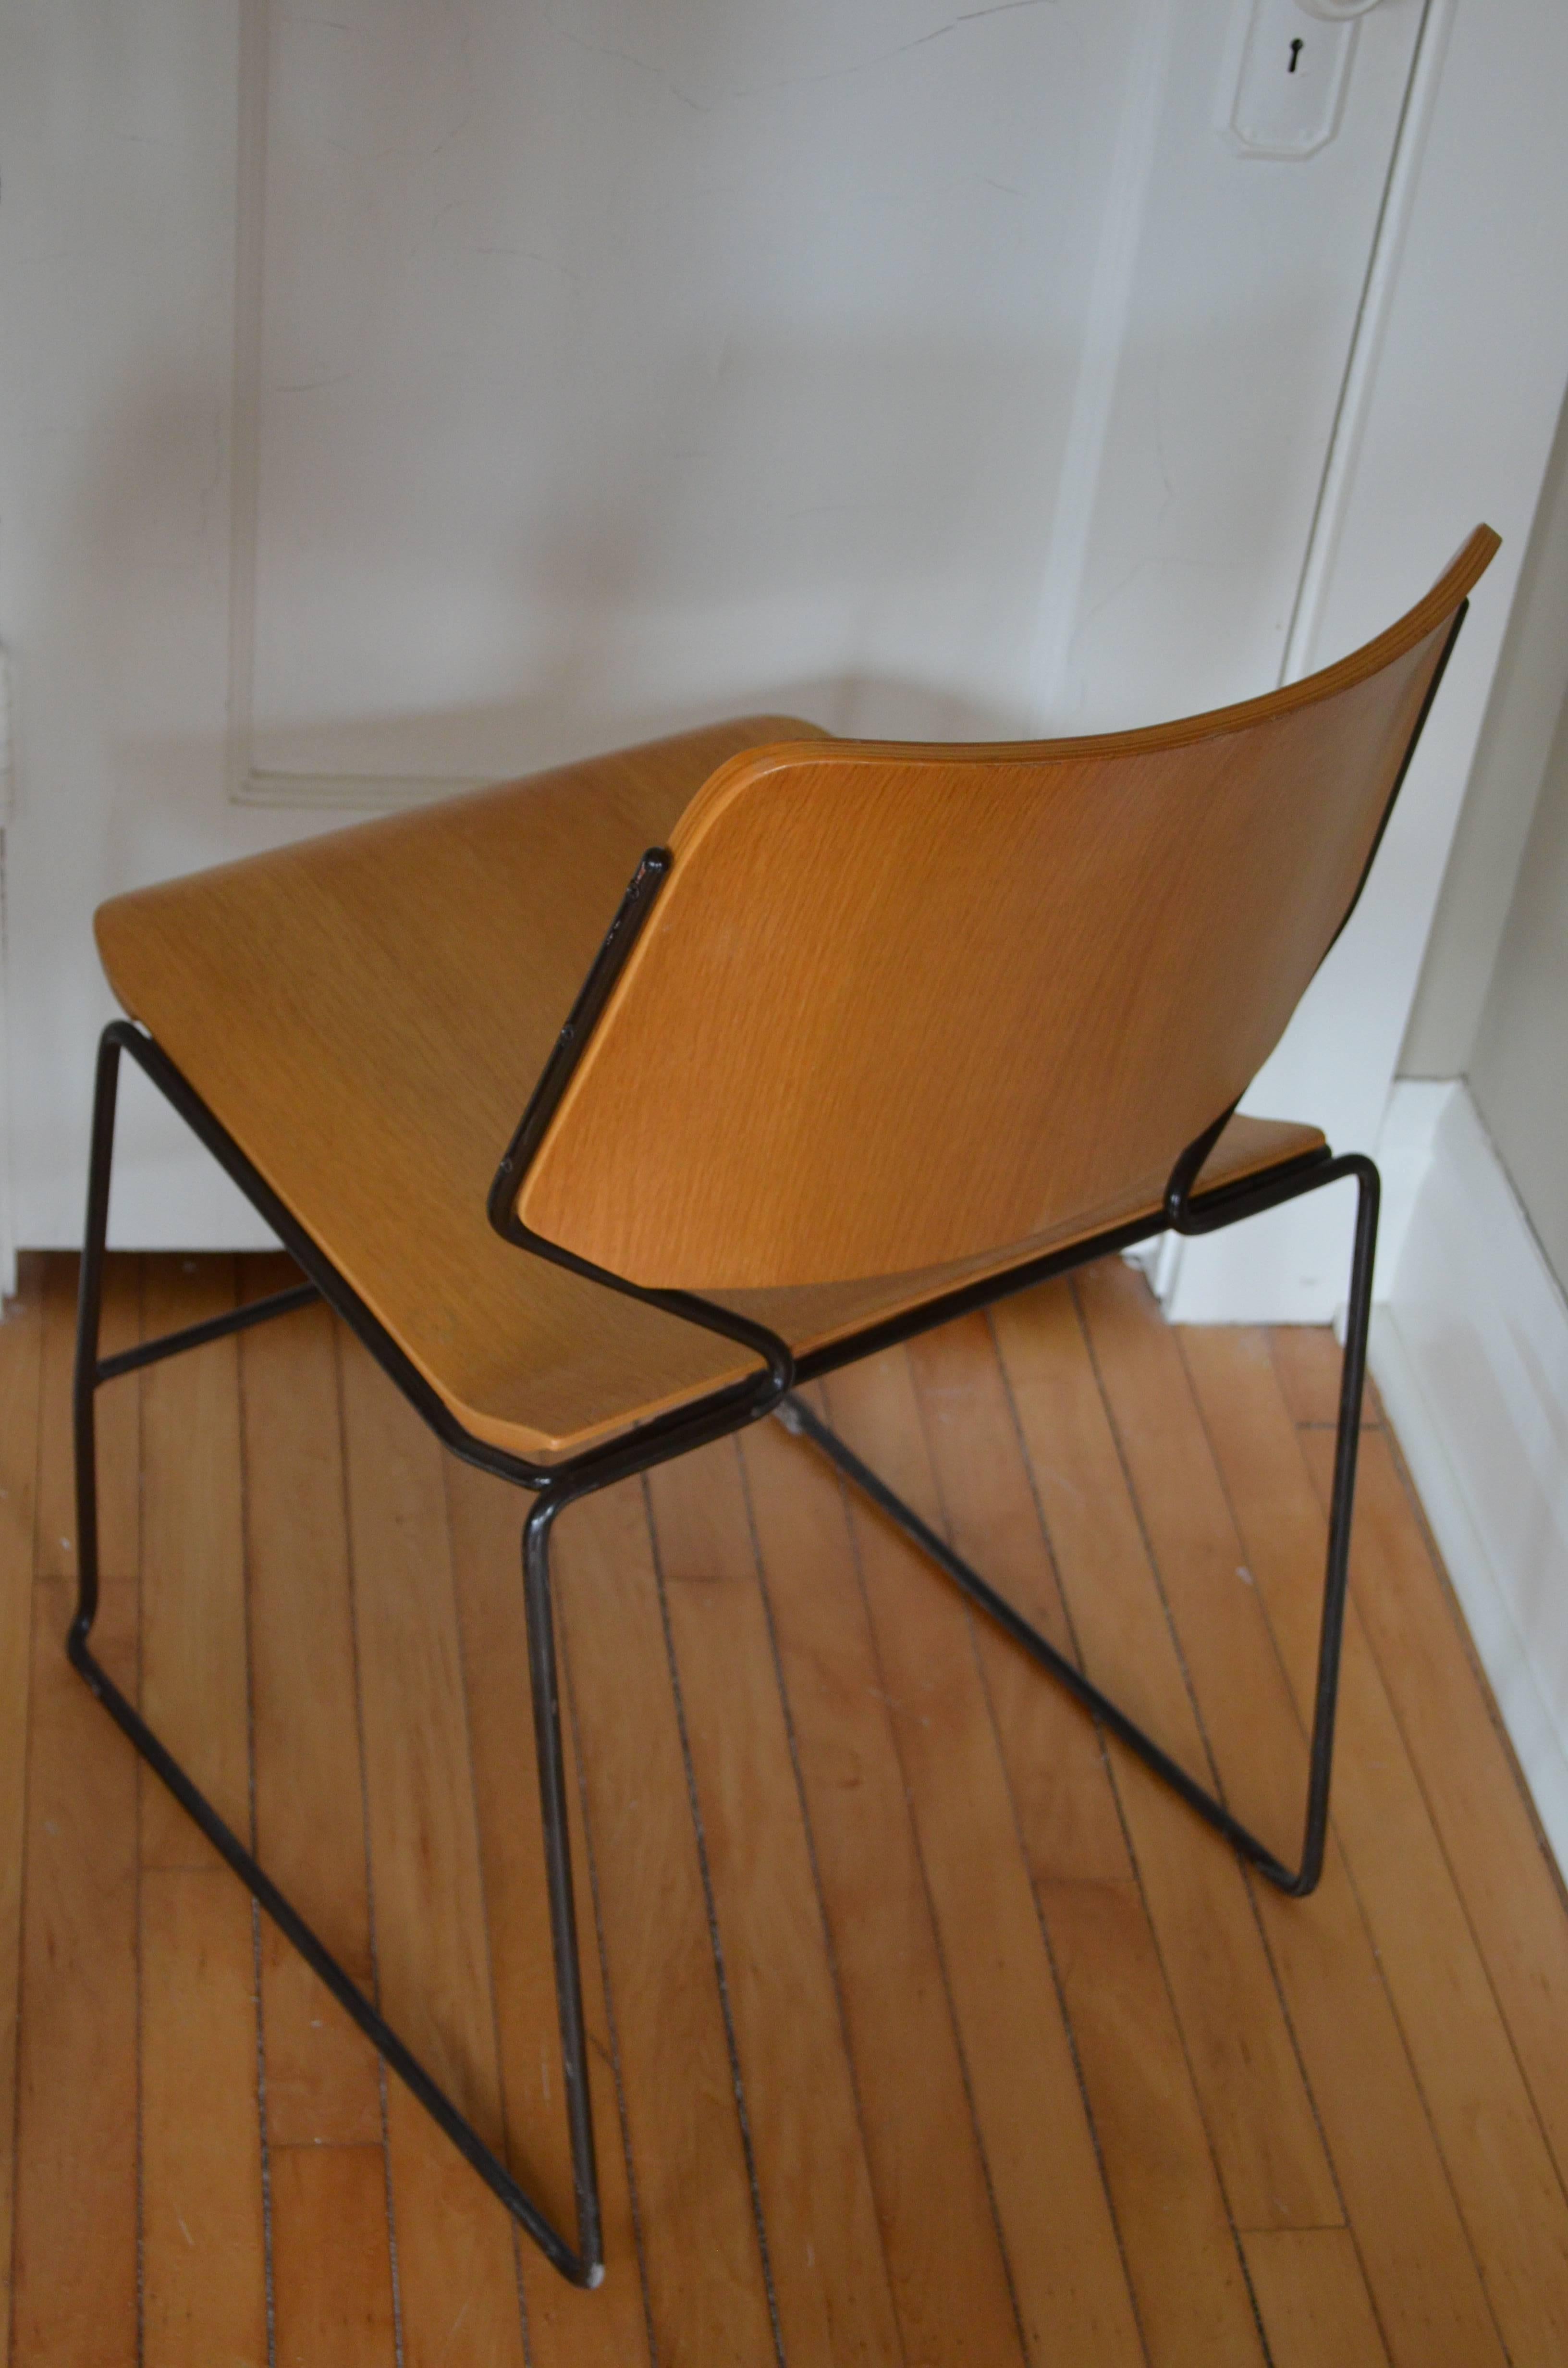 Steel Lot of 60 Vintage Dining Room Chairs w/Oak Veneer Seats; priced individually